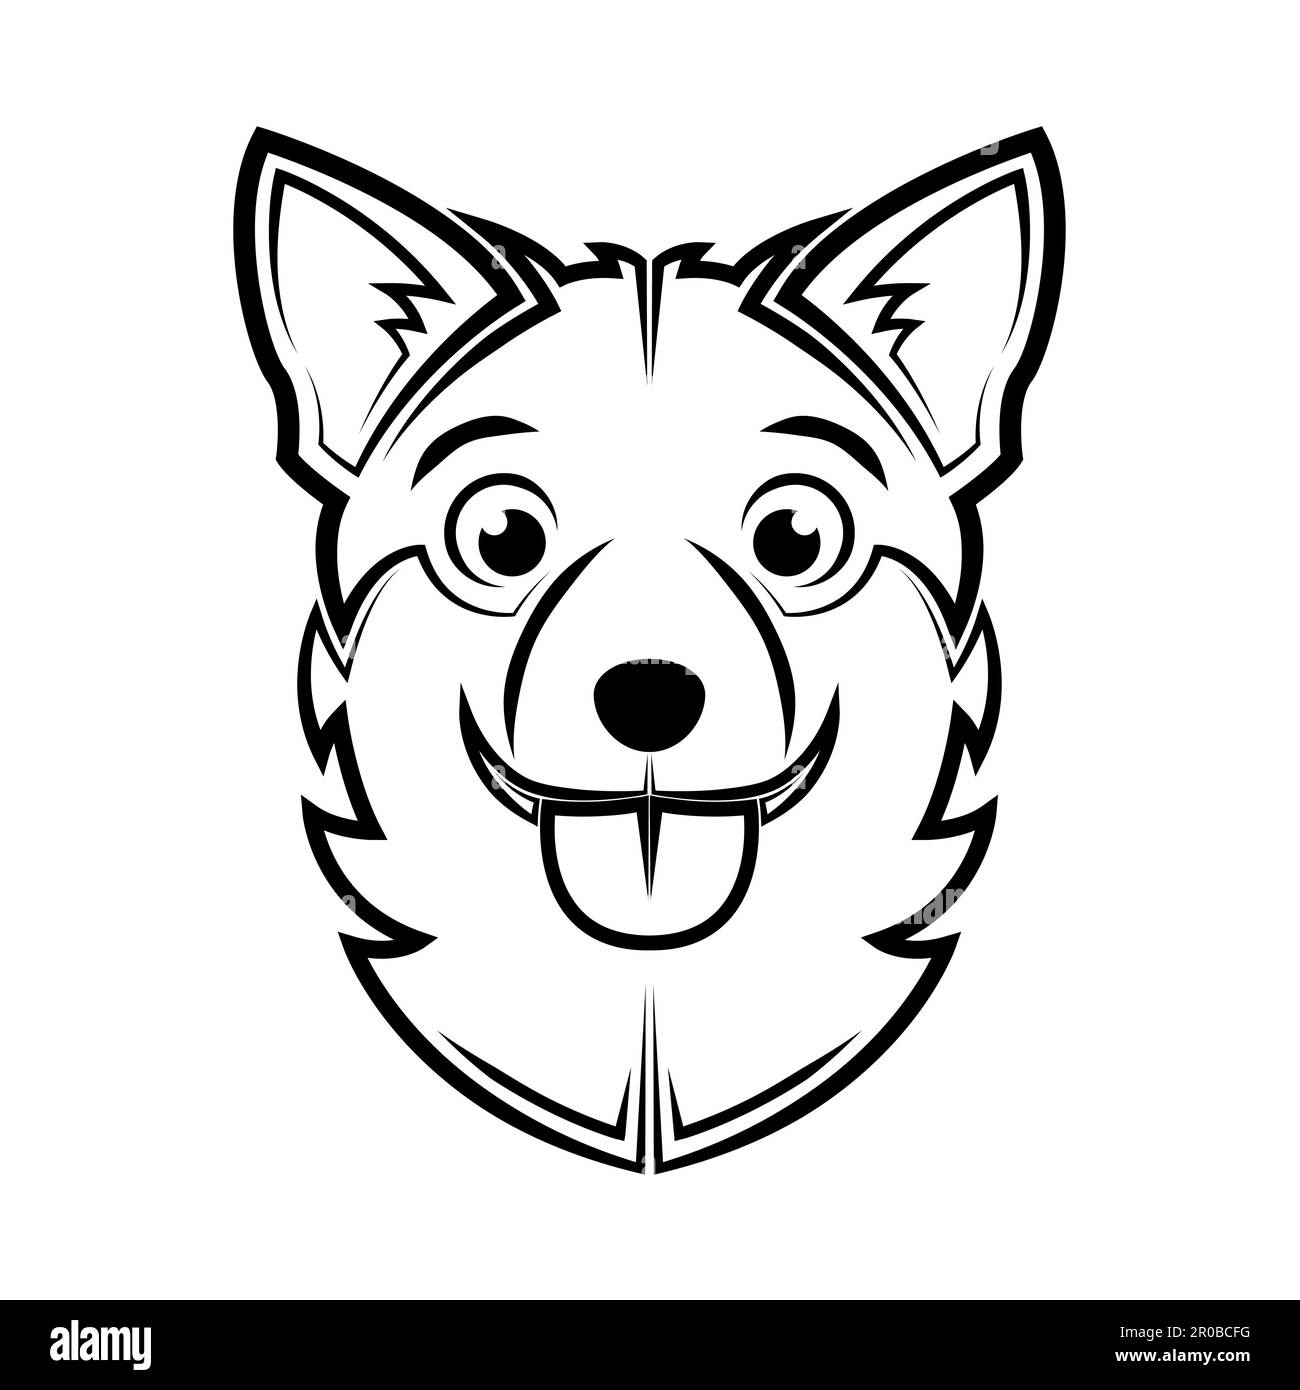 Schwarz-weiße Linienkunst des Hundekopfes. Gute Verwendung für Symbol, Maskottchen, Symbol, Avatar, Tattoo, T-Shirt-Design, Logo oder ein beliebiges Design Stock Vektor